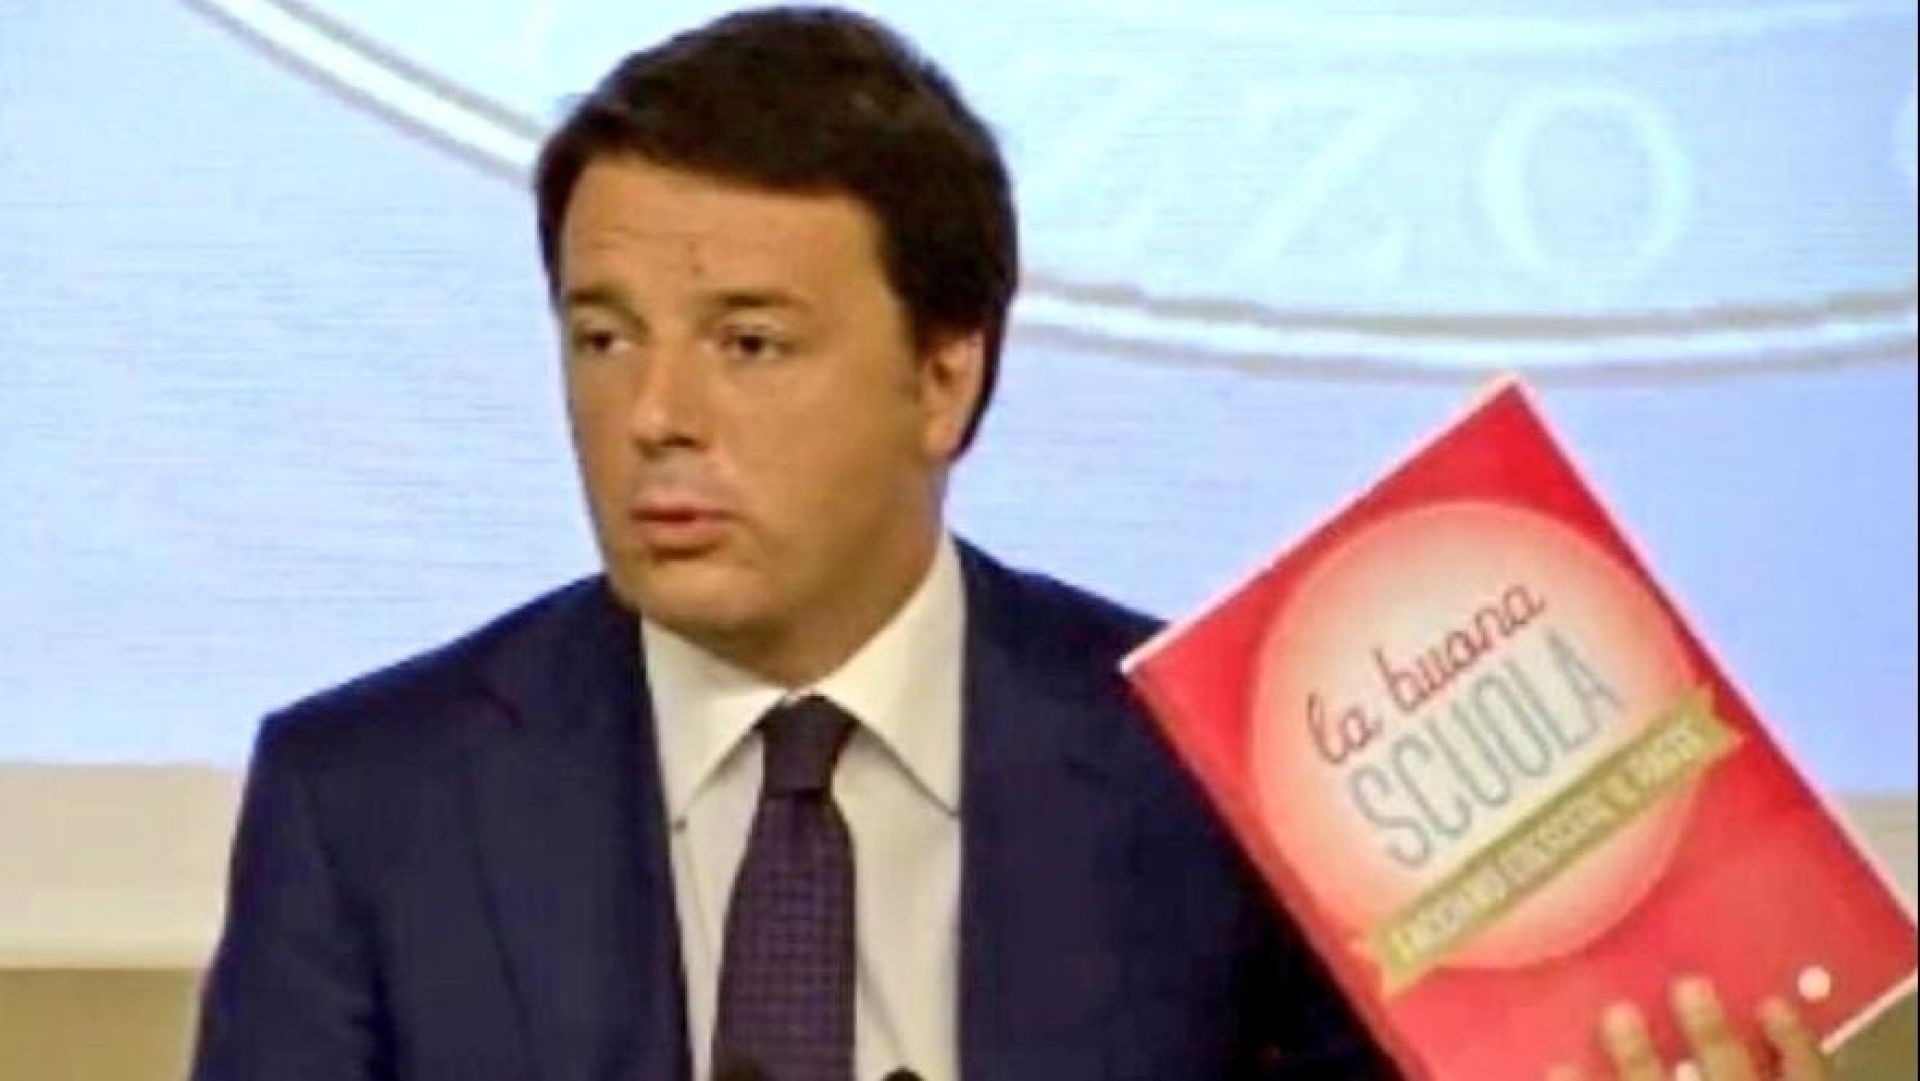 La buona scuola dei diritti contro la "buona scuola" di Renzi